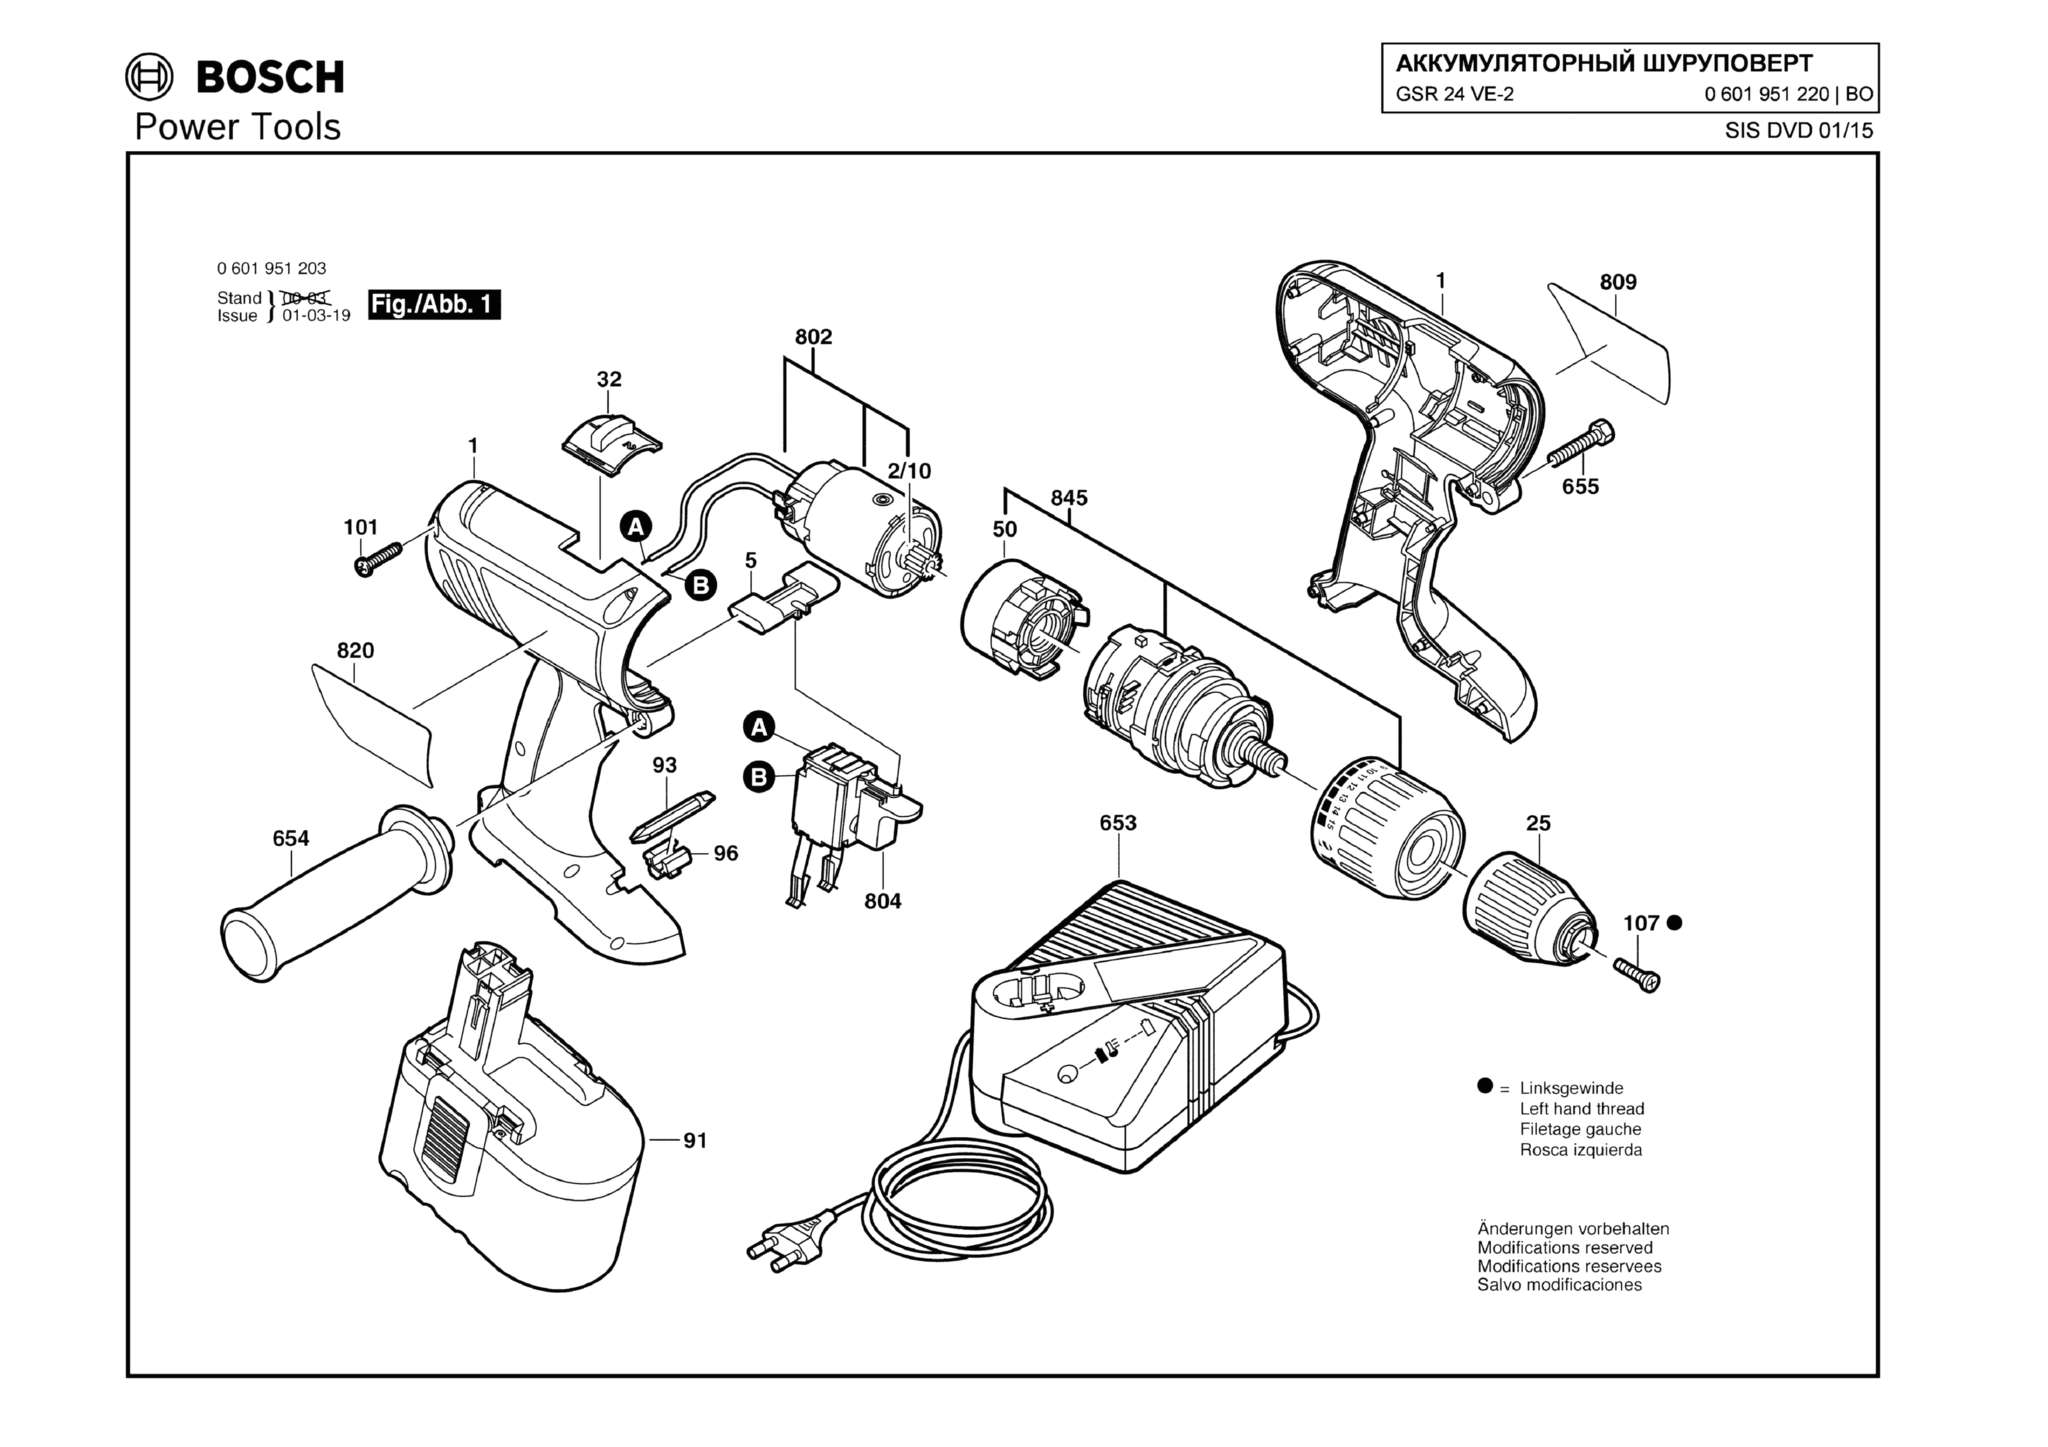 Запчасти, схема и деталировка Bosch GSR 24 VE-2 (ТИП 0601951220)